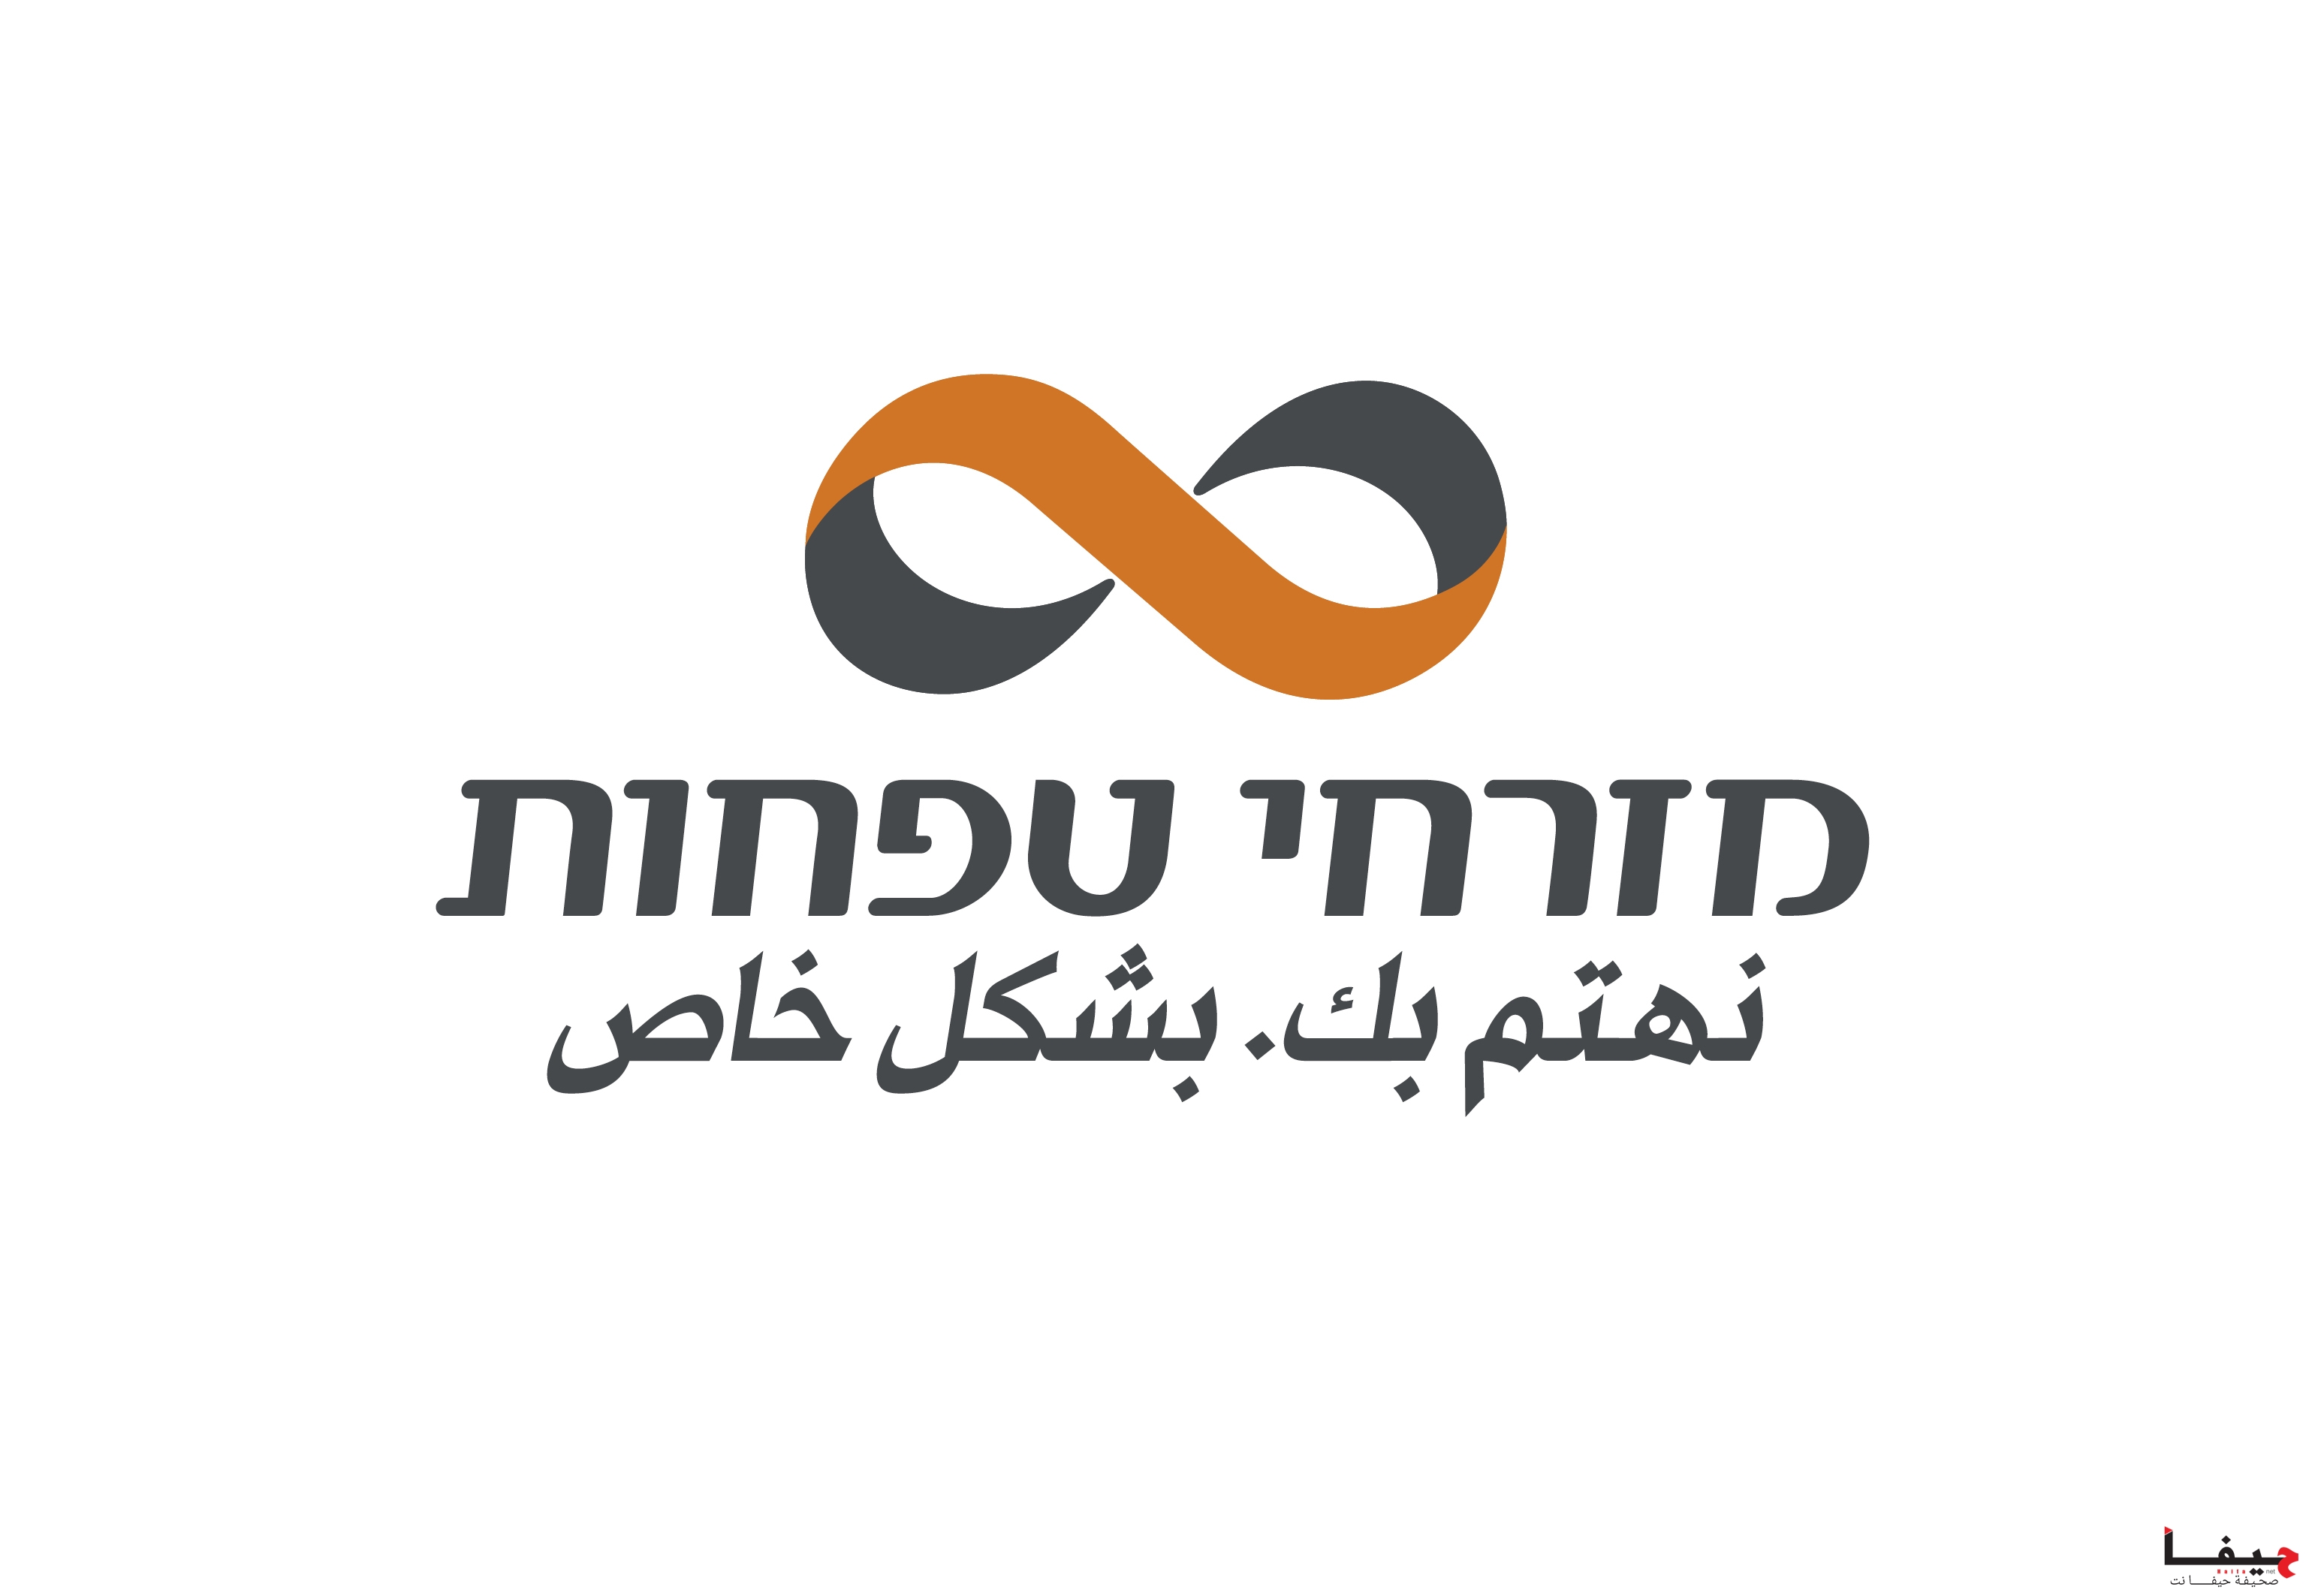 MZR_logo (2)